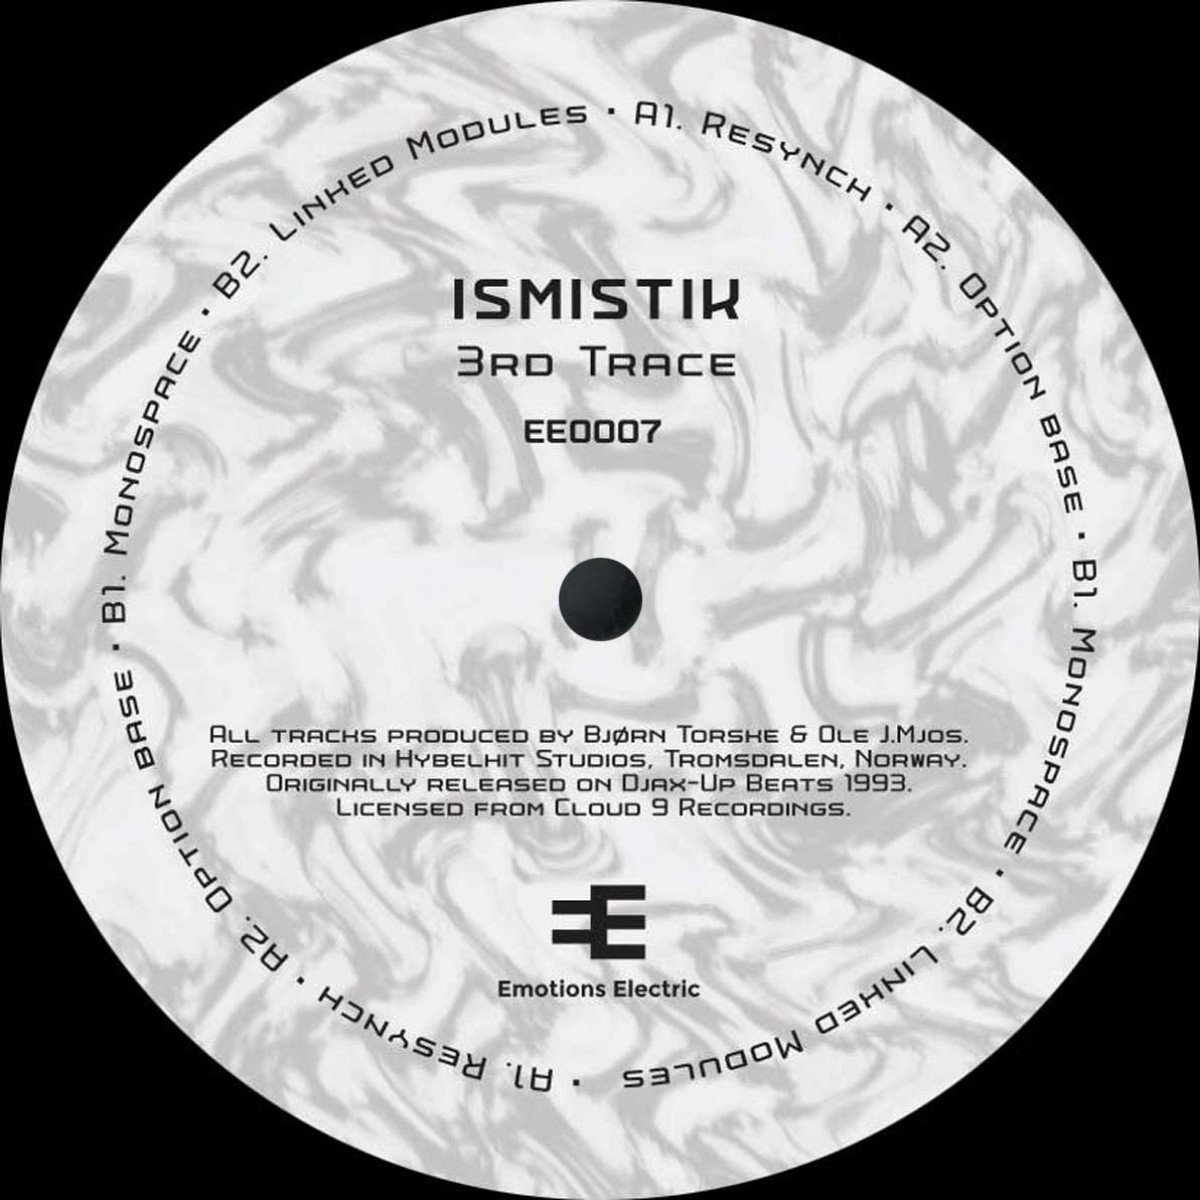 Ismistik/Björn Torske/ - 3rd Trace EP - EE0007 - EMOTIONS ELECTRIC